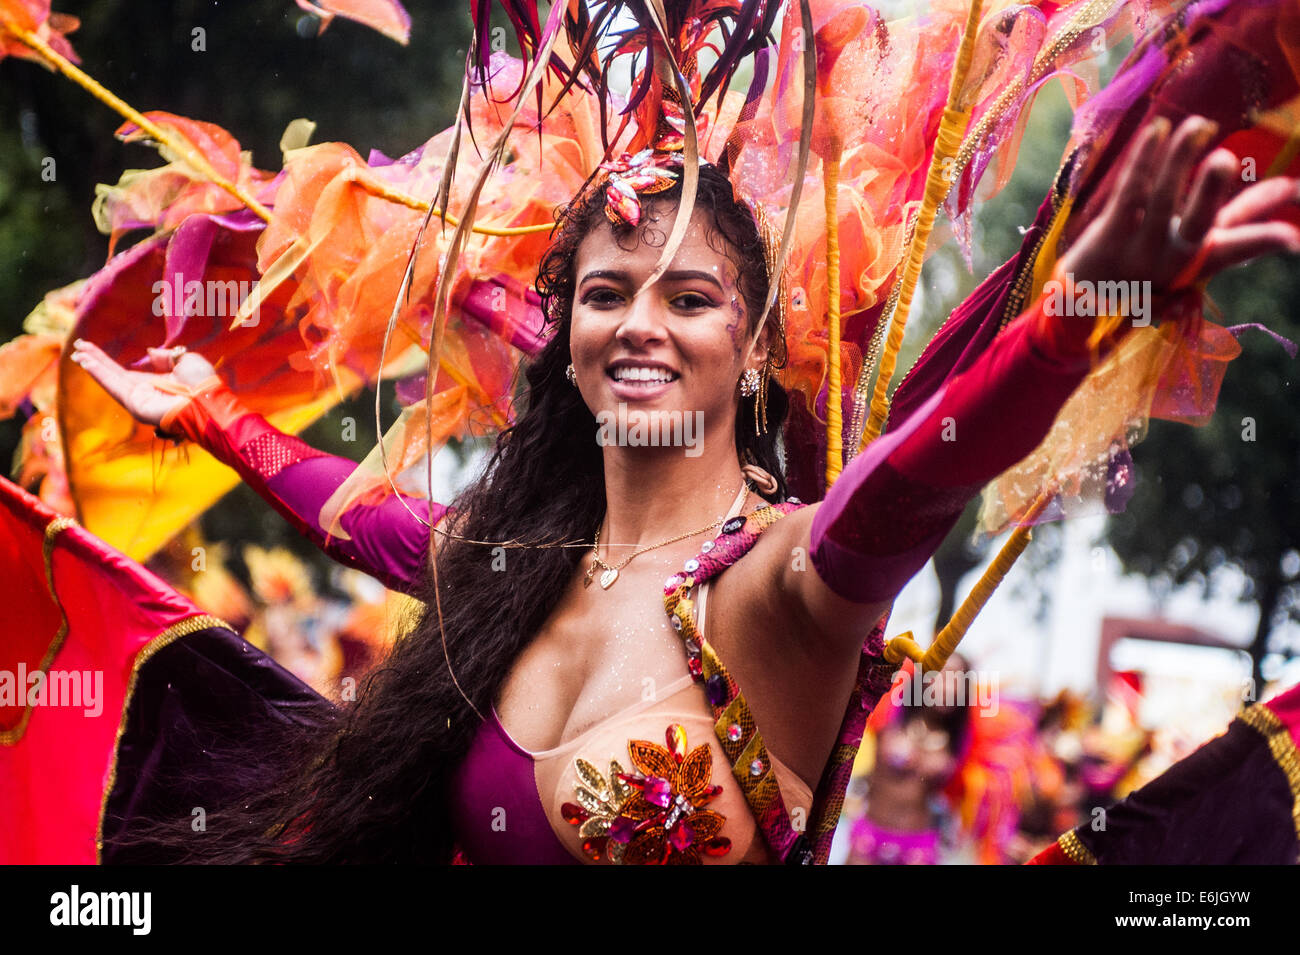 Londres, Royaume-Uni. 25 août, 2014. a reveler prend part au défilé durant la carnaval de Notting Hill à Londres. Credit : Piero Cruciatti/Alamy Live News Banque D'Images